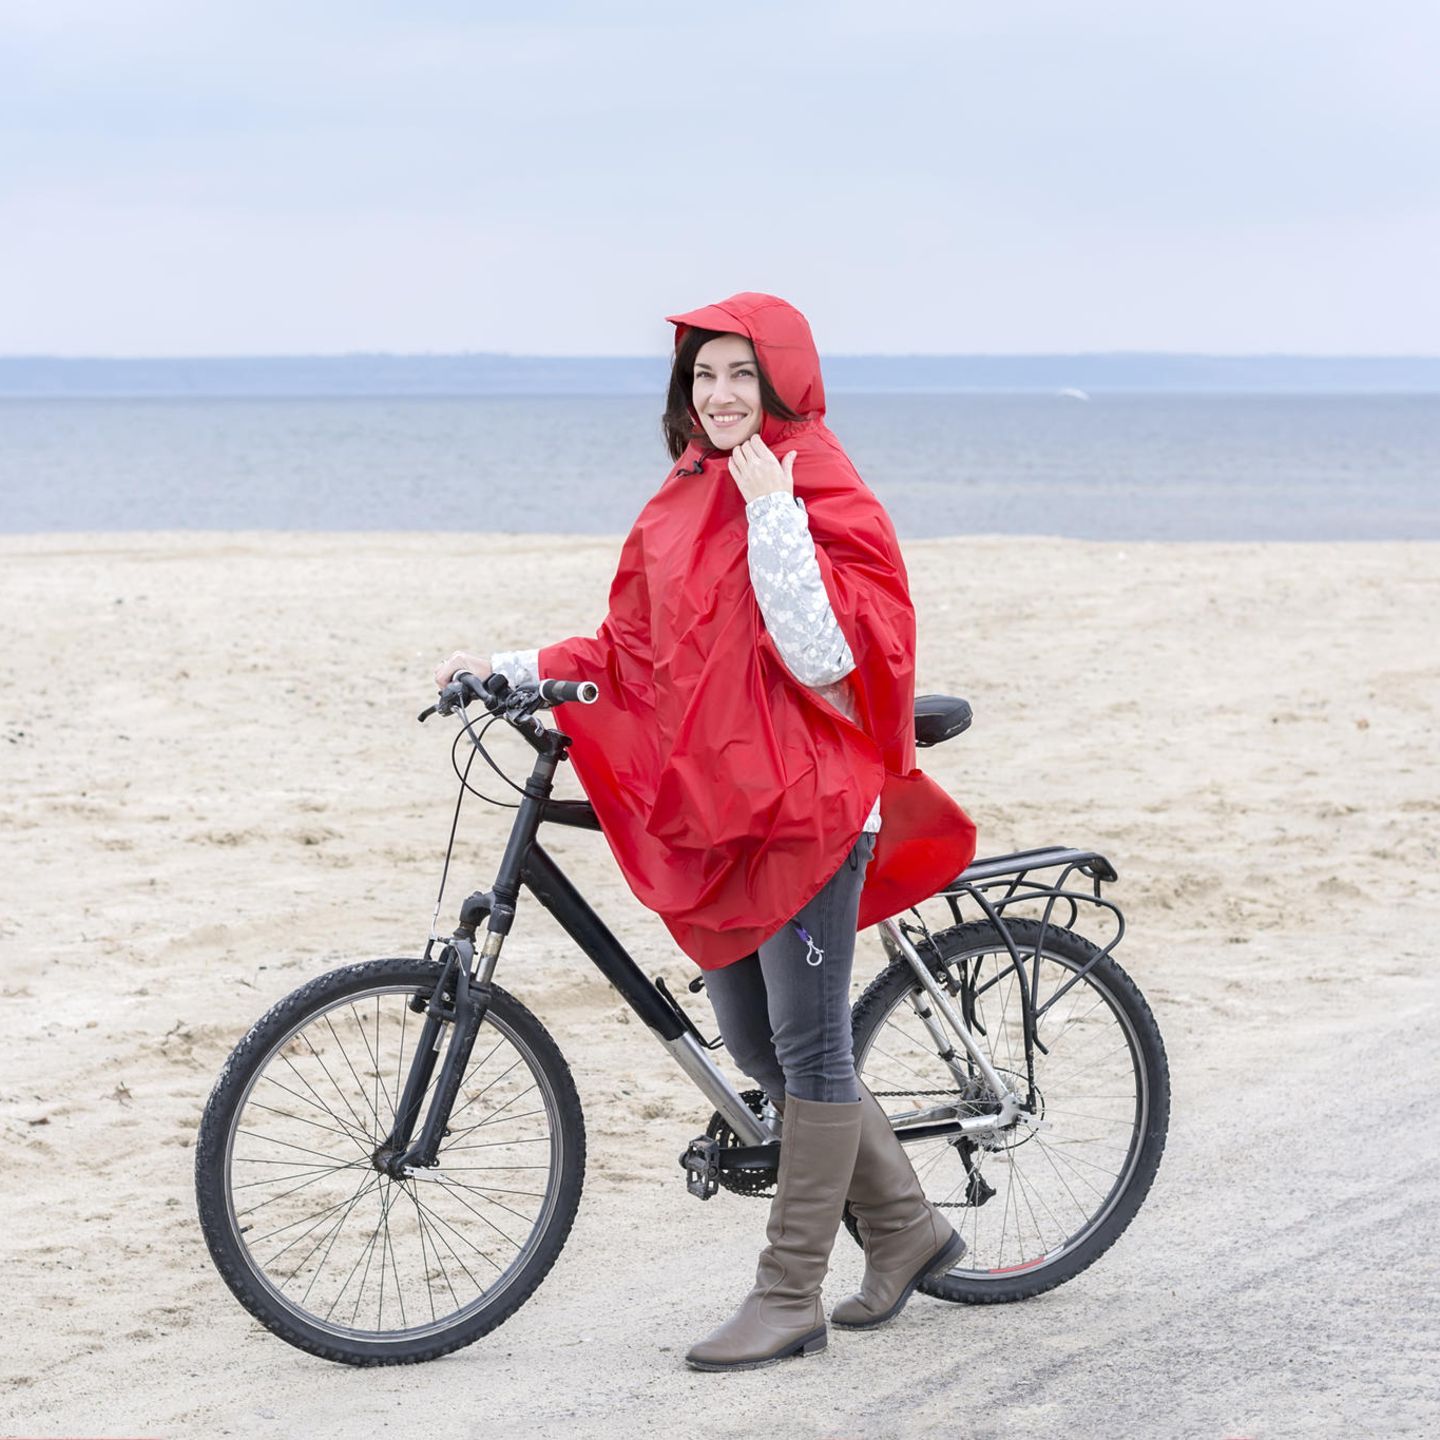 Regenponcho fürs Fahrrad: Diese 6 Modelle halten dich sicher